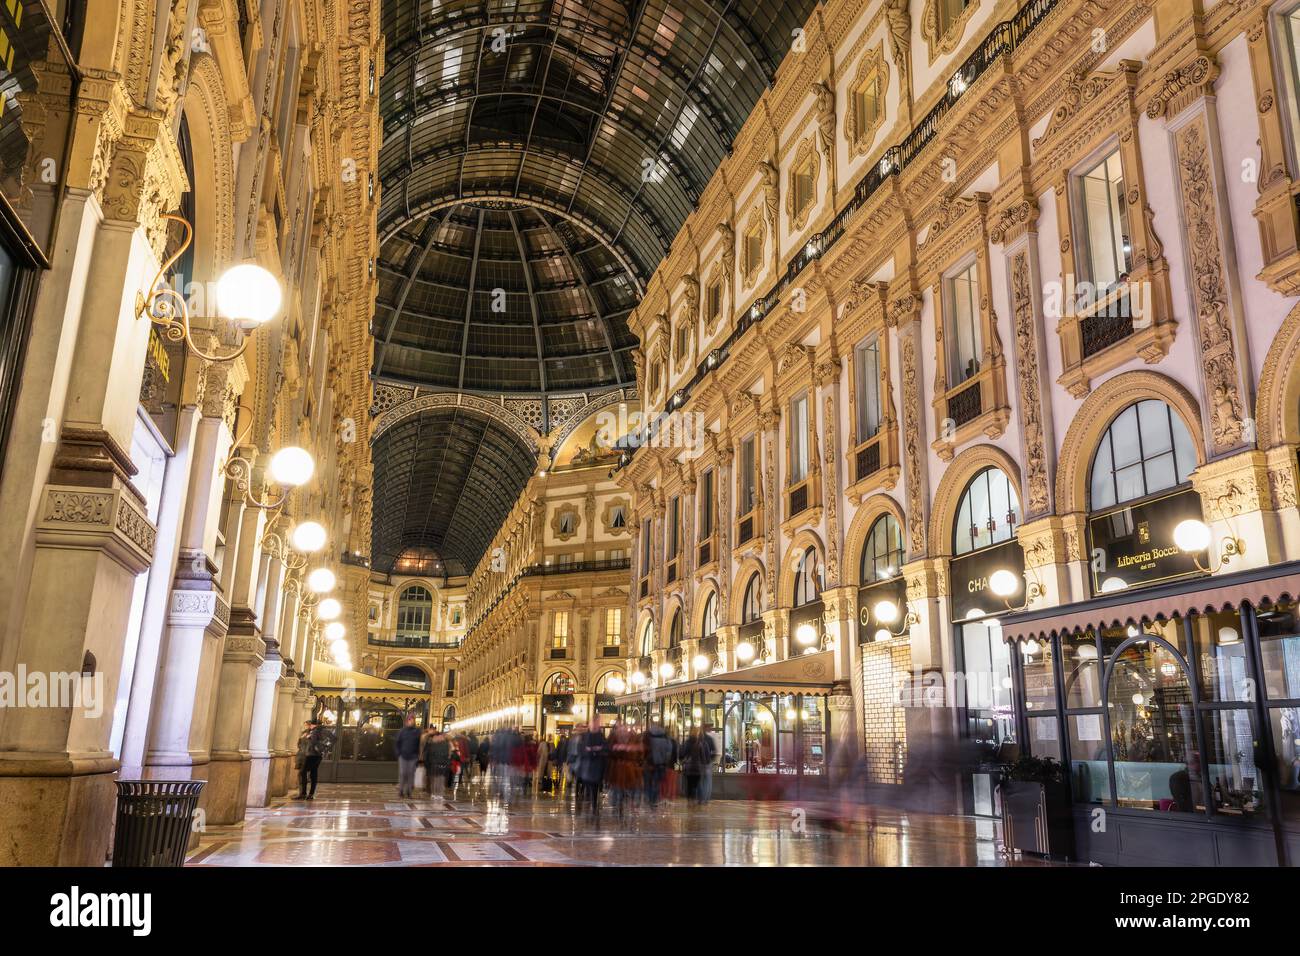 Milan, Italie illumina l'intérieur de la galerie Vittorio Emanuele II la nuit, arcade datant du 19th siècle avec boutiques et foule non identifiable sur la place principale du Duomo Banque D'Images